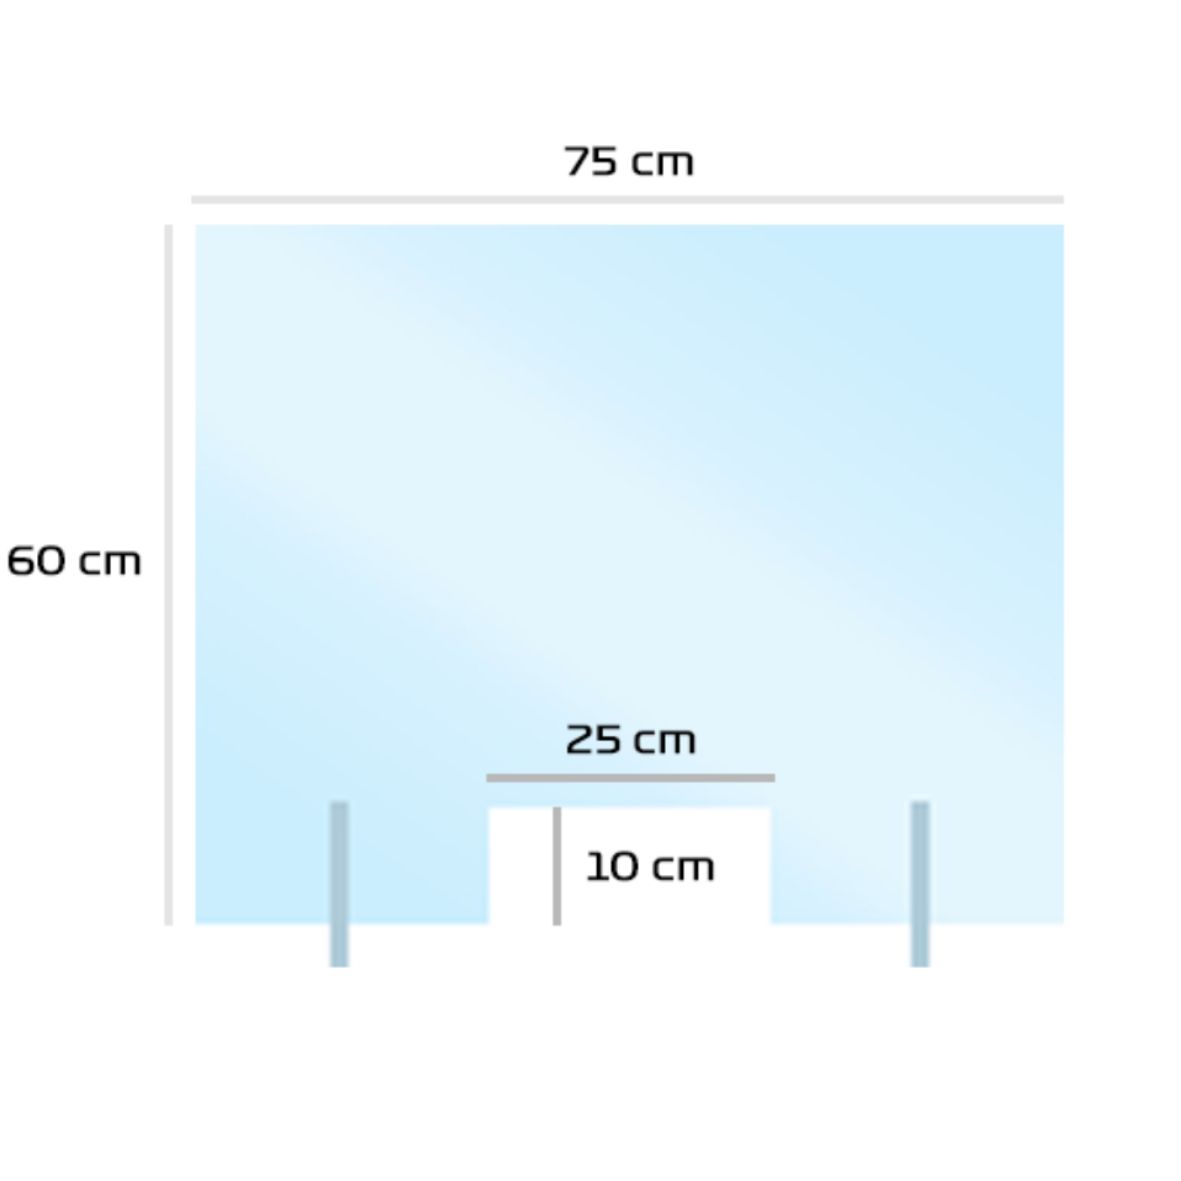 Mampara de protección de metacrilato transparente estandar ya fabricada de medida 75cm x 60cm especial mostradores